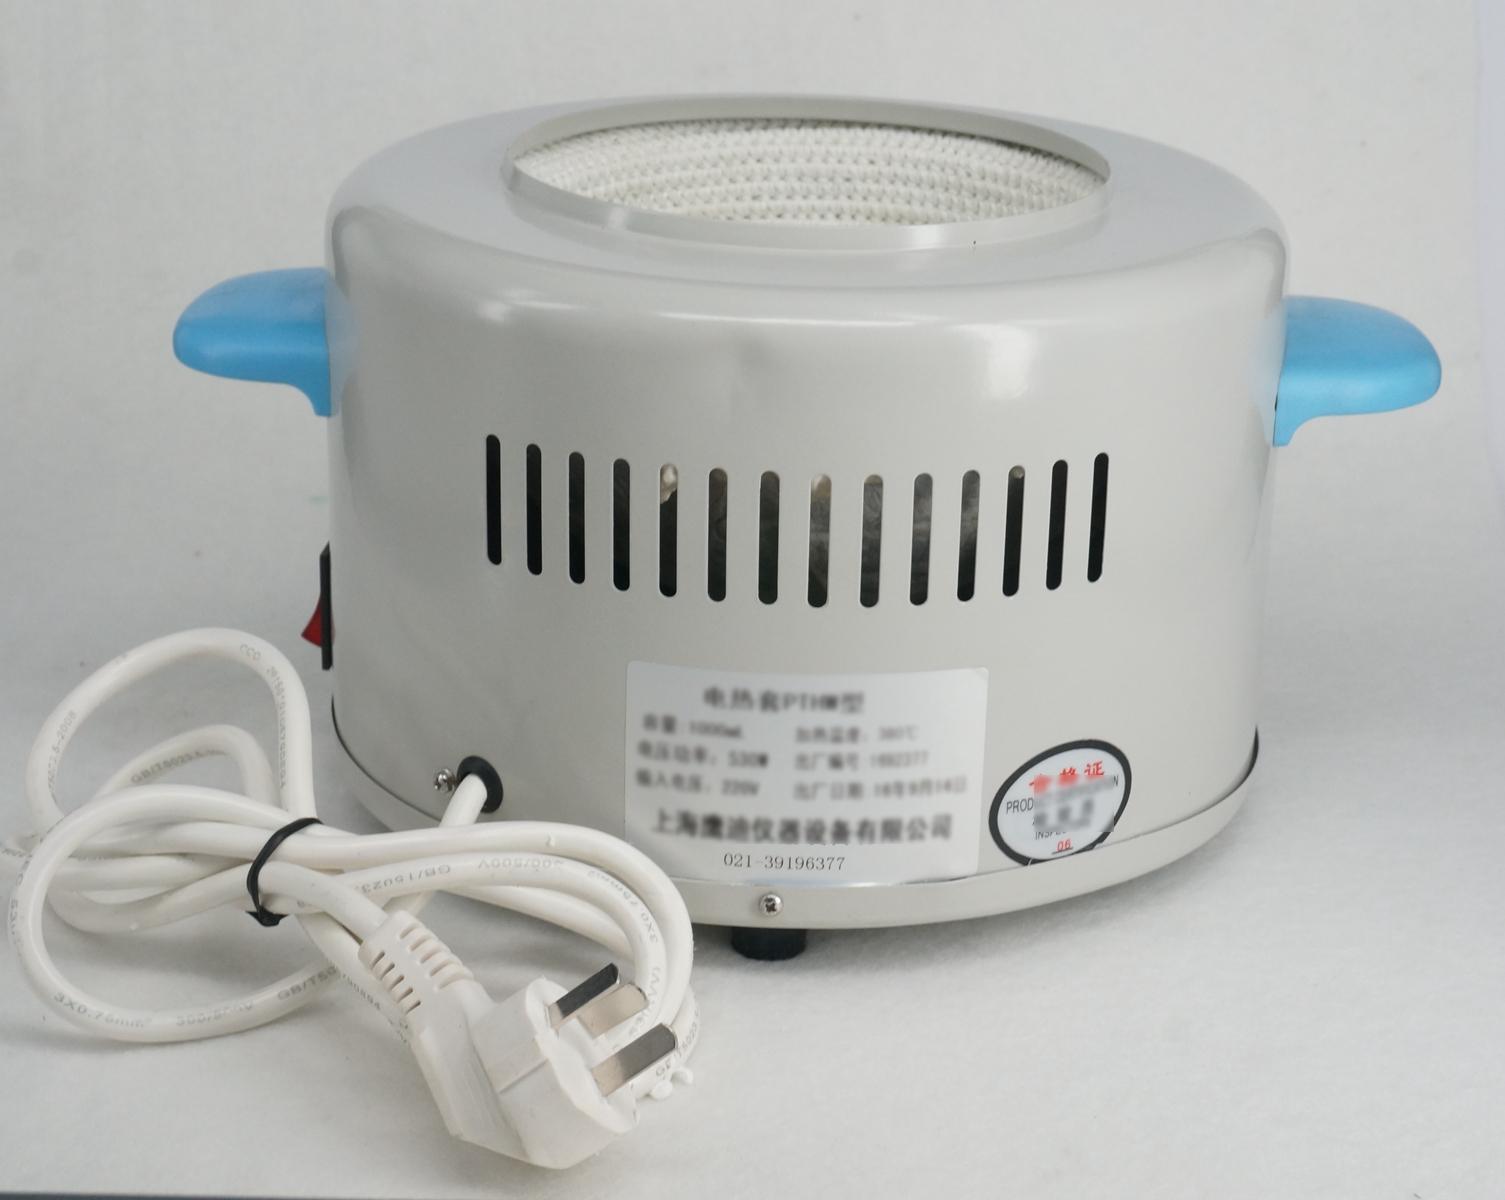 500ml 230W elektryczna regulacja temperatury czasza grzejna z regulacją temperatury PTHW